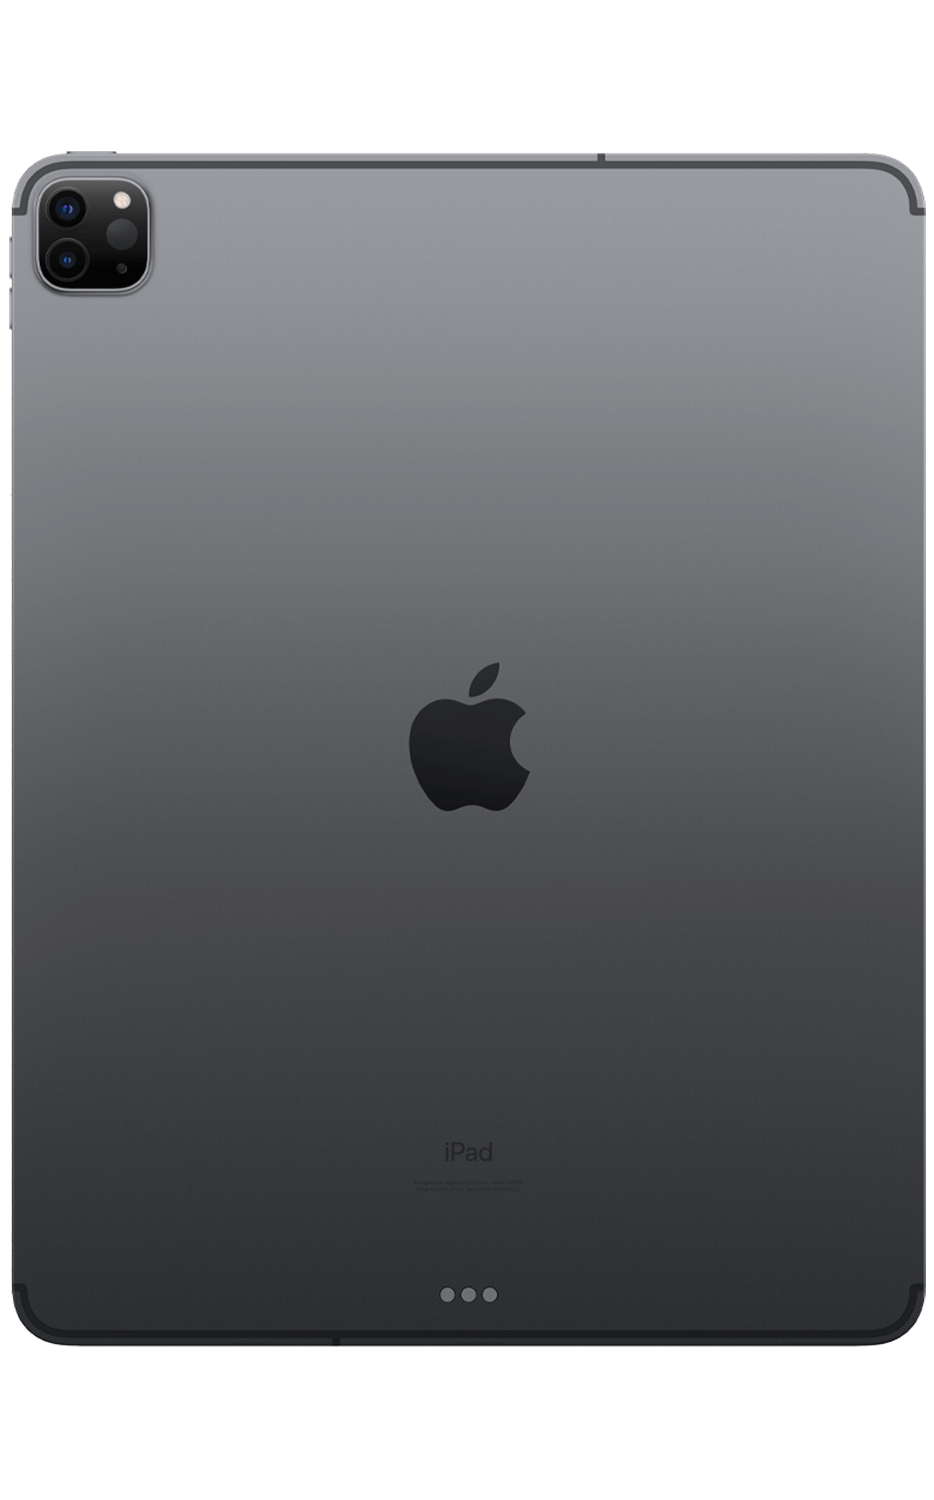 iPad Pro 12.9 (4th Generation) LCD Repair